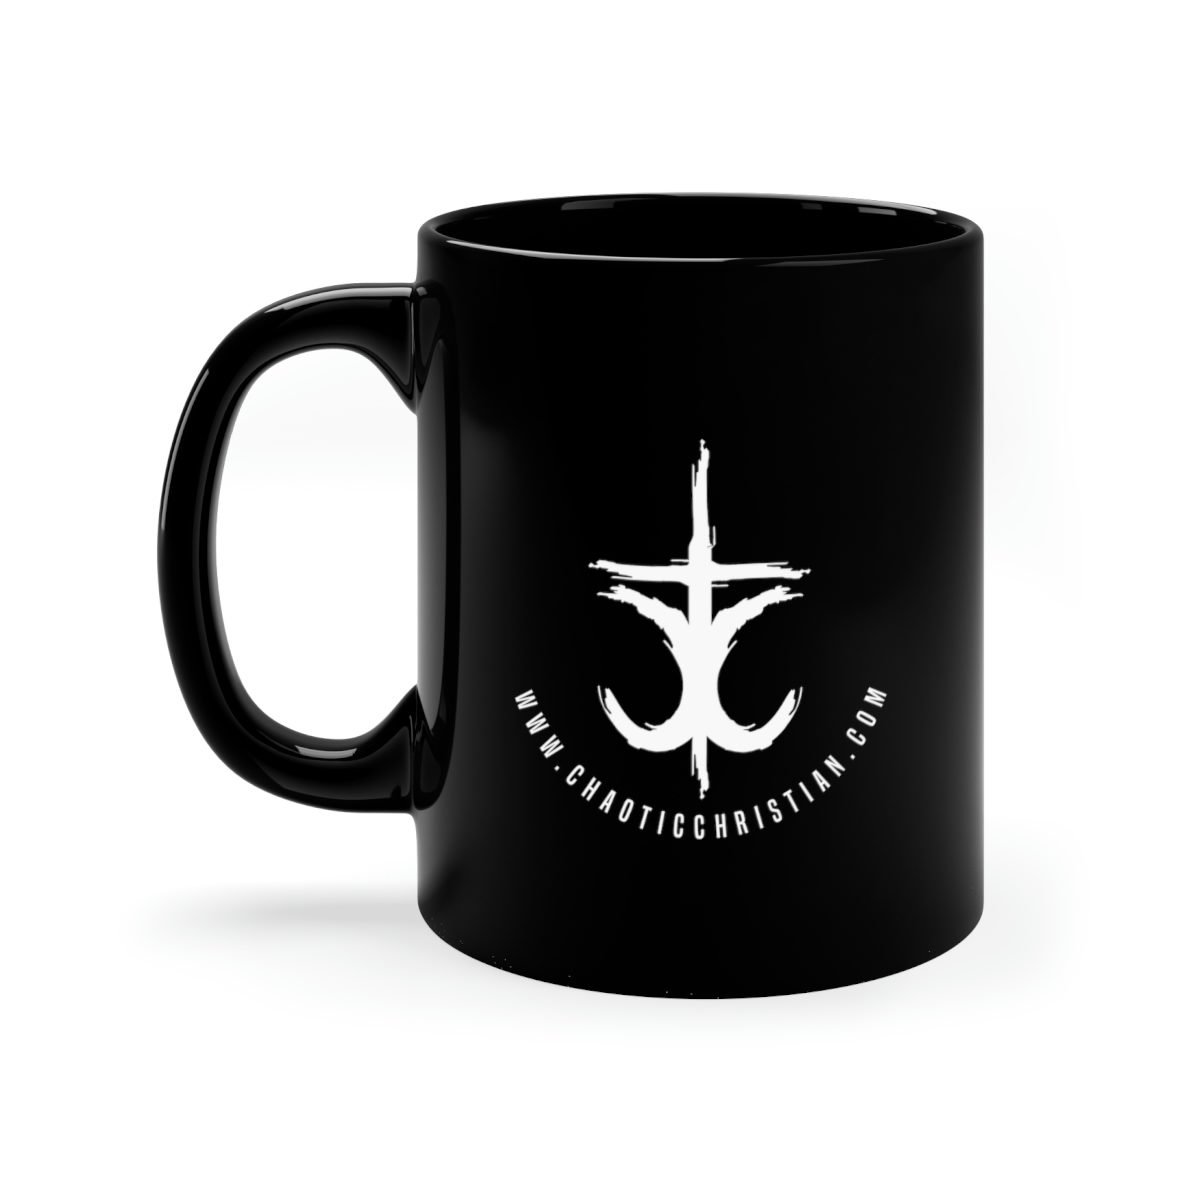 The Chaotic Christian – Cross 11oz Black Mug